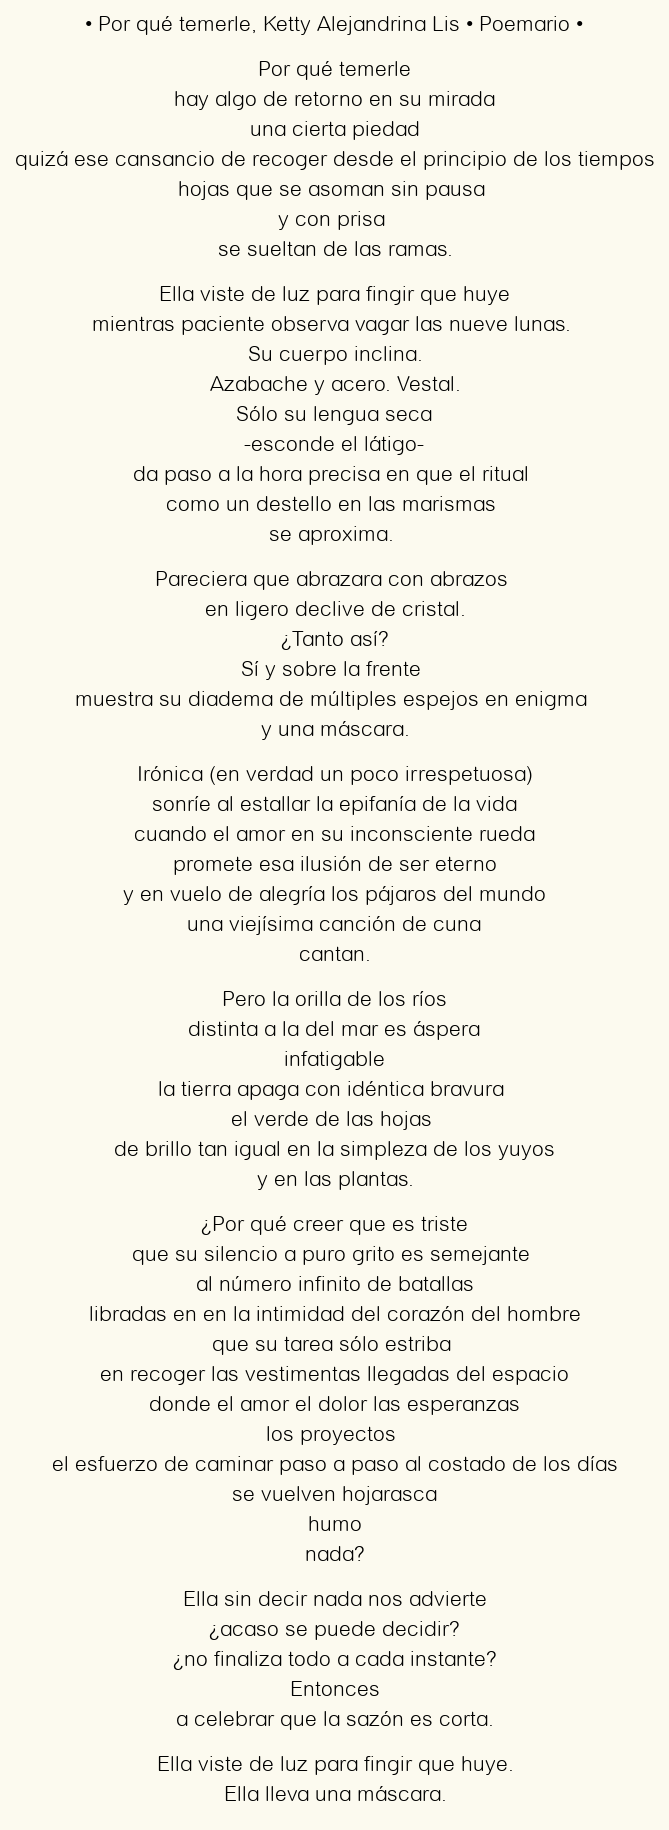 Imagen con el poema Por qué temerle, por Ketty Alejandrina Lis